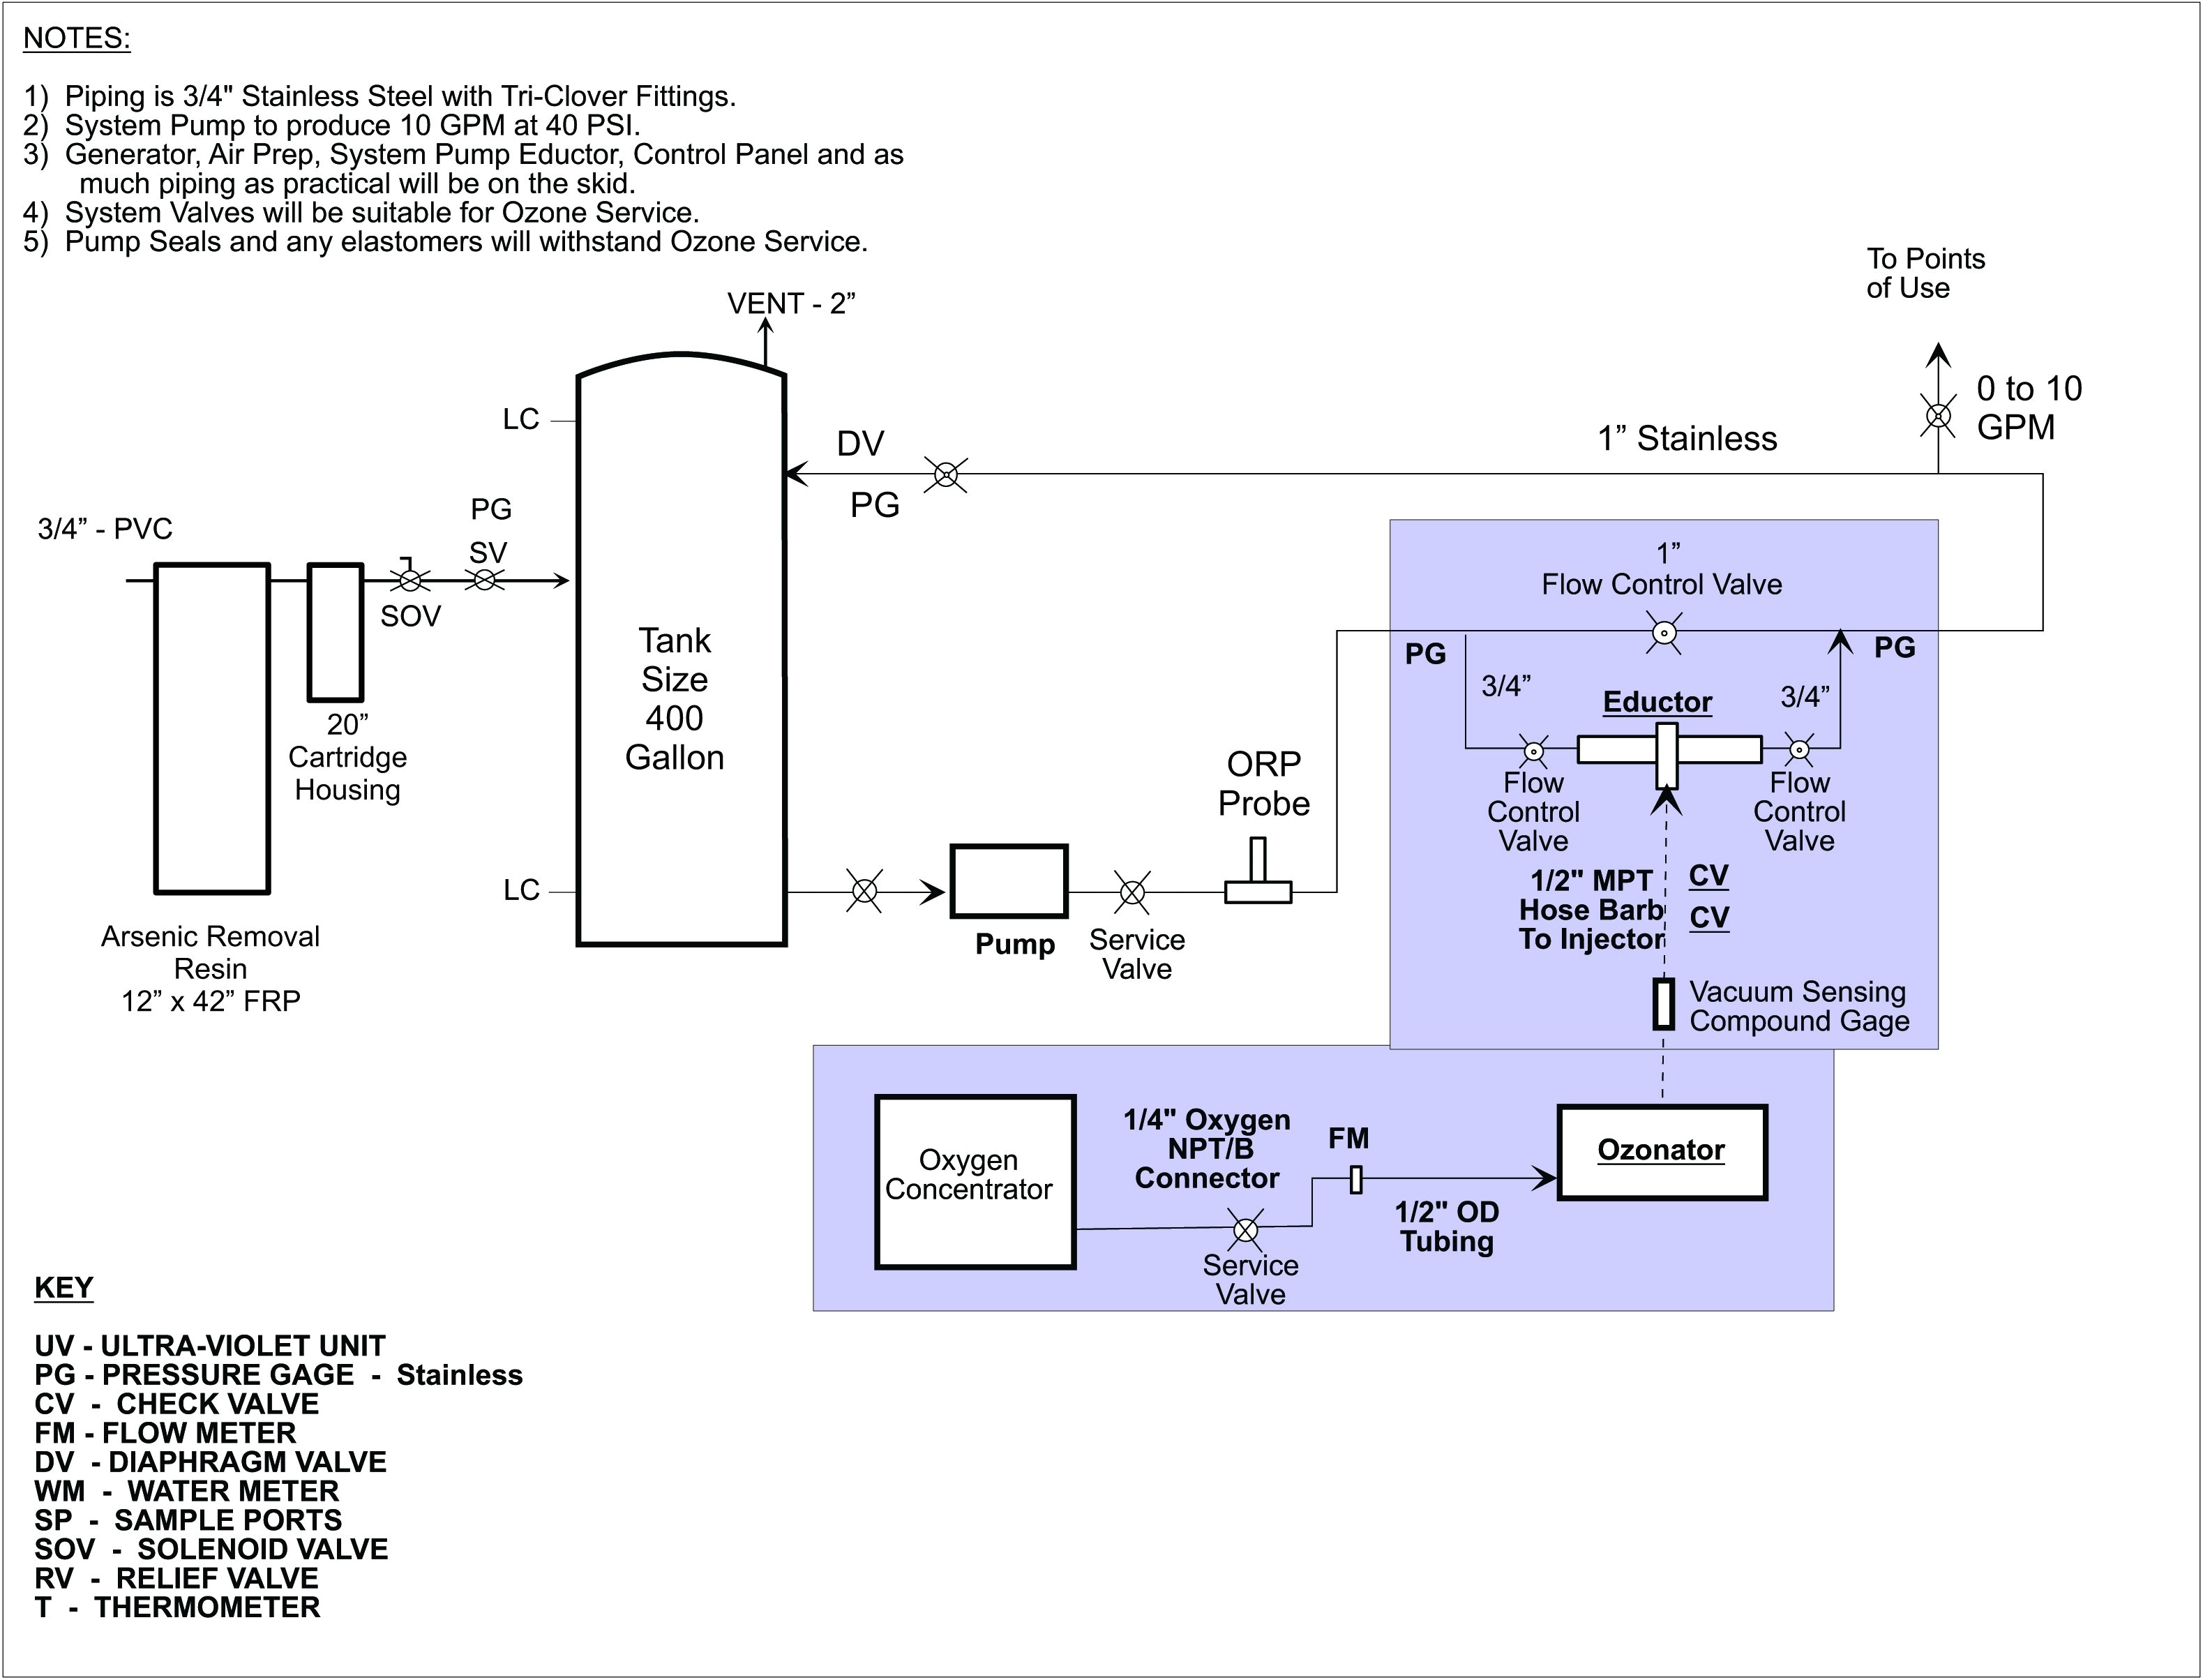 tamper alarm circuit diagram tradeoficcom schema diagram database diode testing circuit diagram tradeoficcom wiring diagram schematic